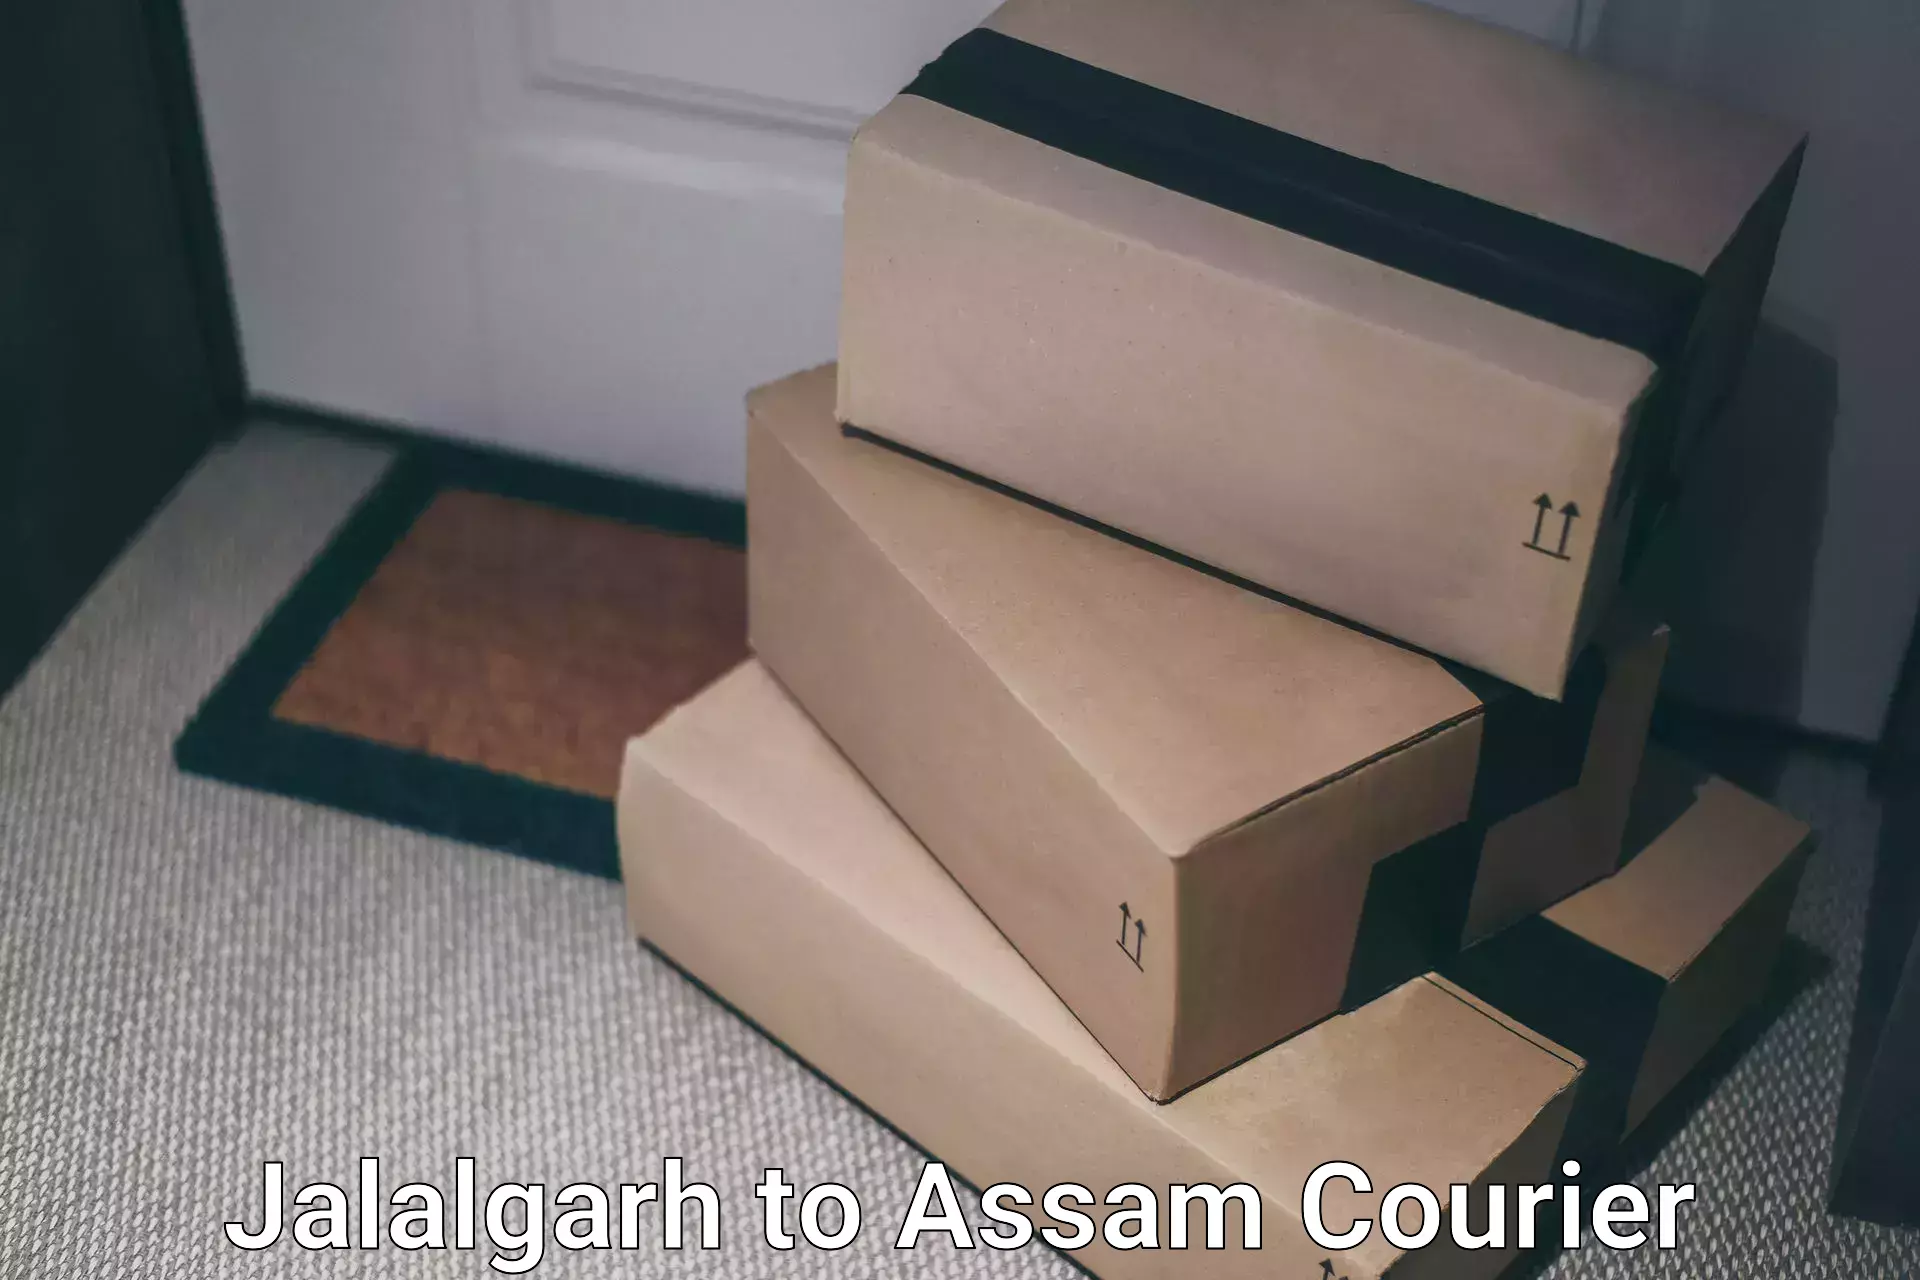 International courier rates Jalalgarh to Baksha Bodoland